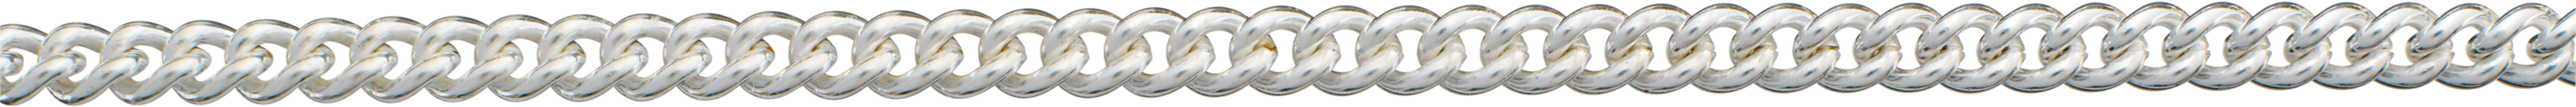 Pancerka okrągła srebro 925/- 3,50mm, grubość drutu 1,00mm